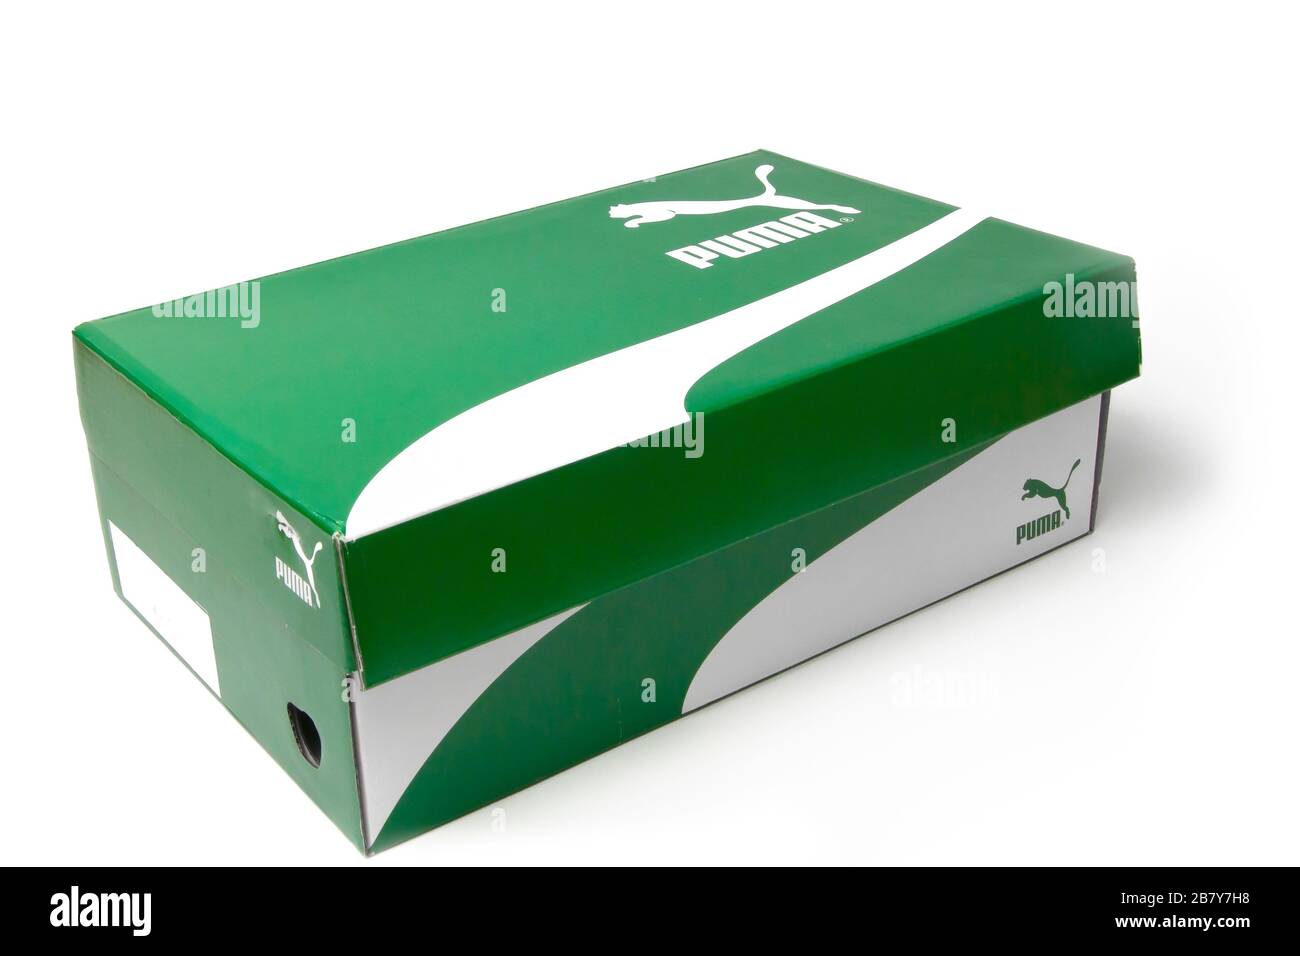 La scatola delle scarpe Puma è isolata su sfondo bianco. Scatola verde con  strisce bianche per gli snickers. San Francisco, USA, marzo 2020 Foto stock  - Alamy